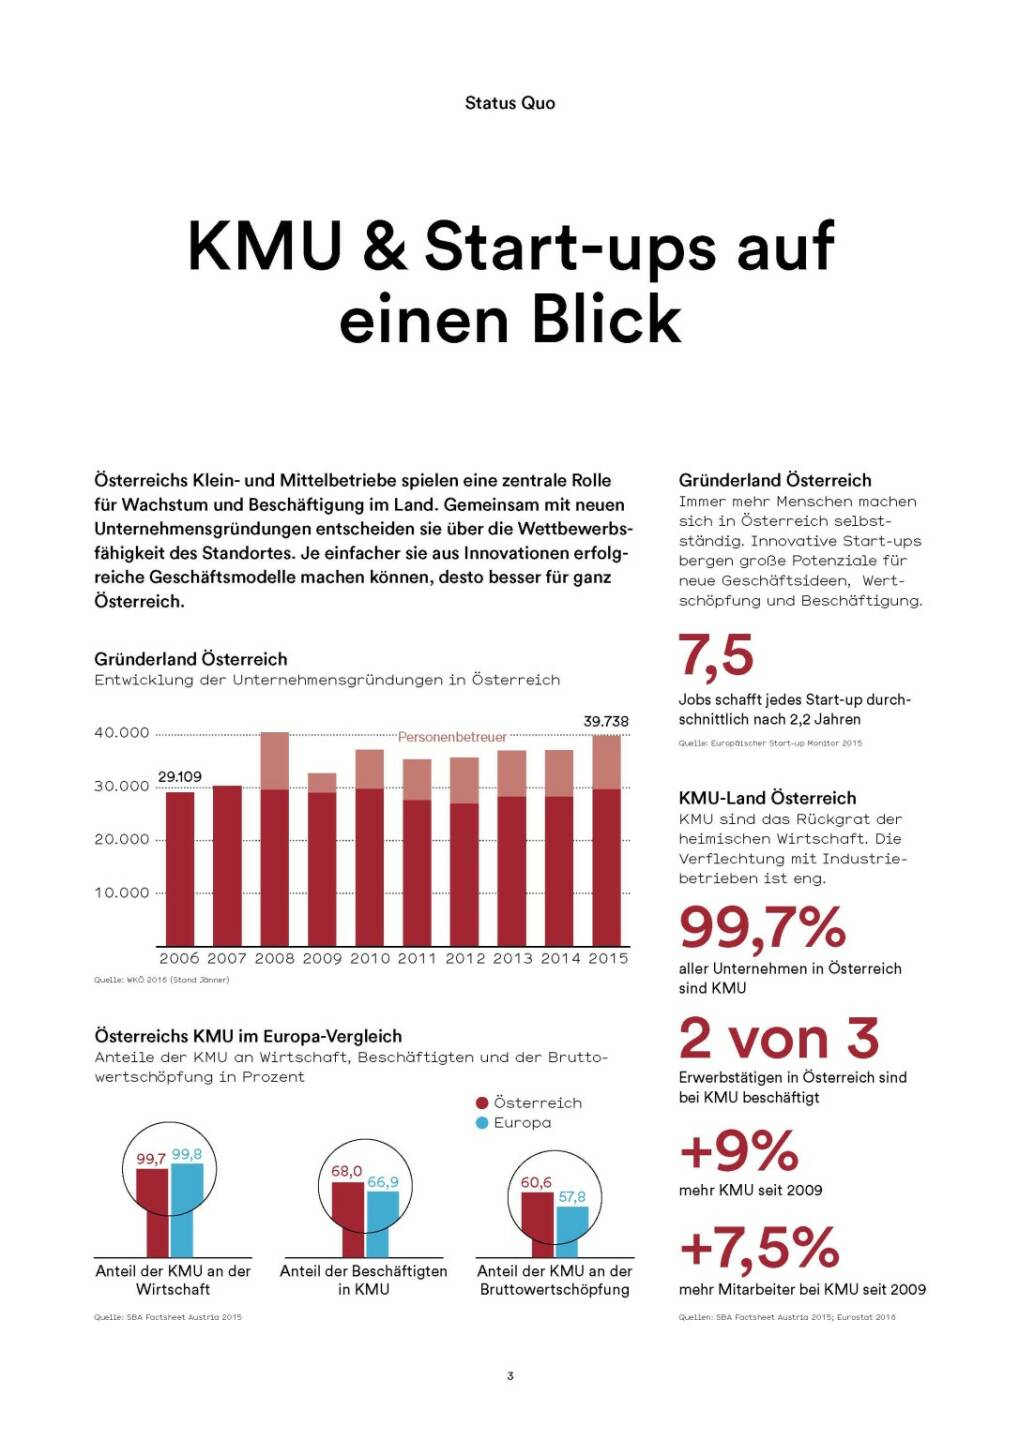 KMU & Start-ups auf einen Blick